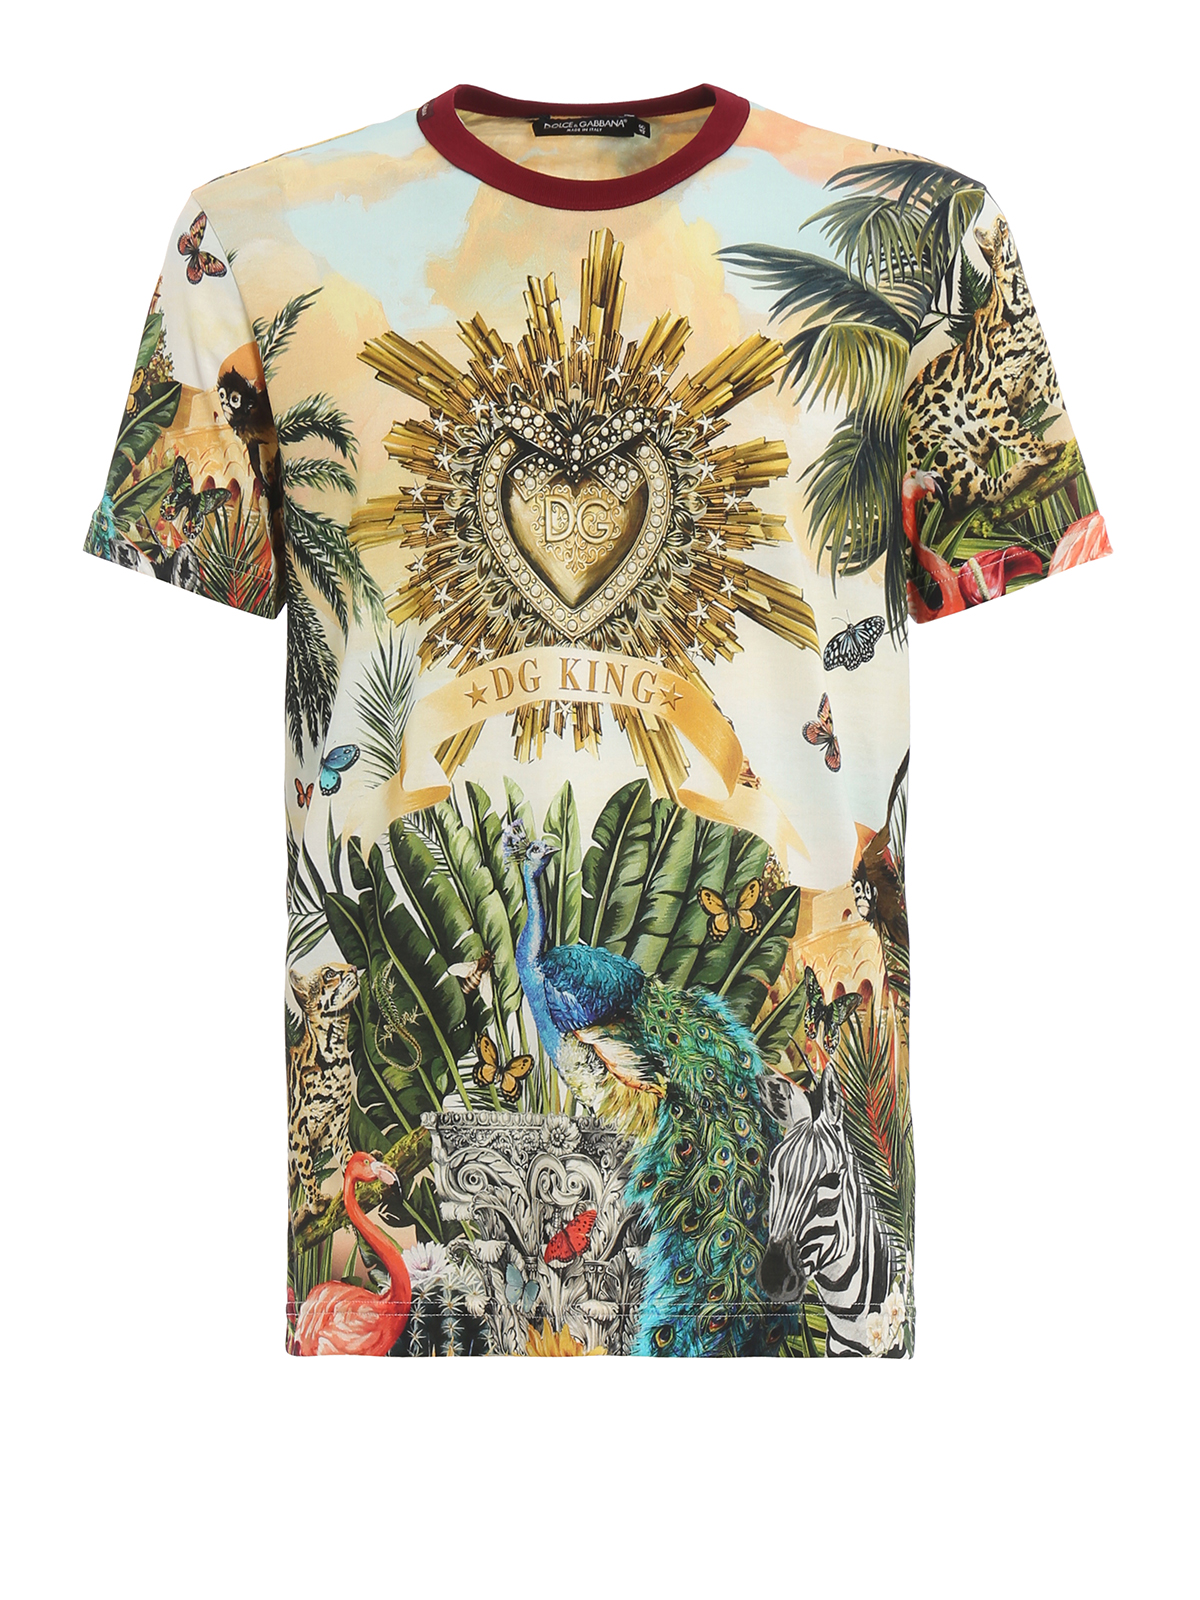 T-shirts Dolce & Gabbana - Tropico DG King print T-shirt - G8KBATHH7YPHHIH3